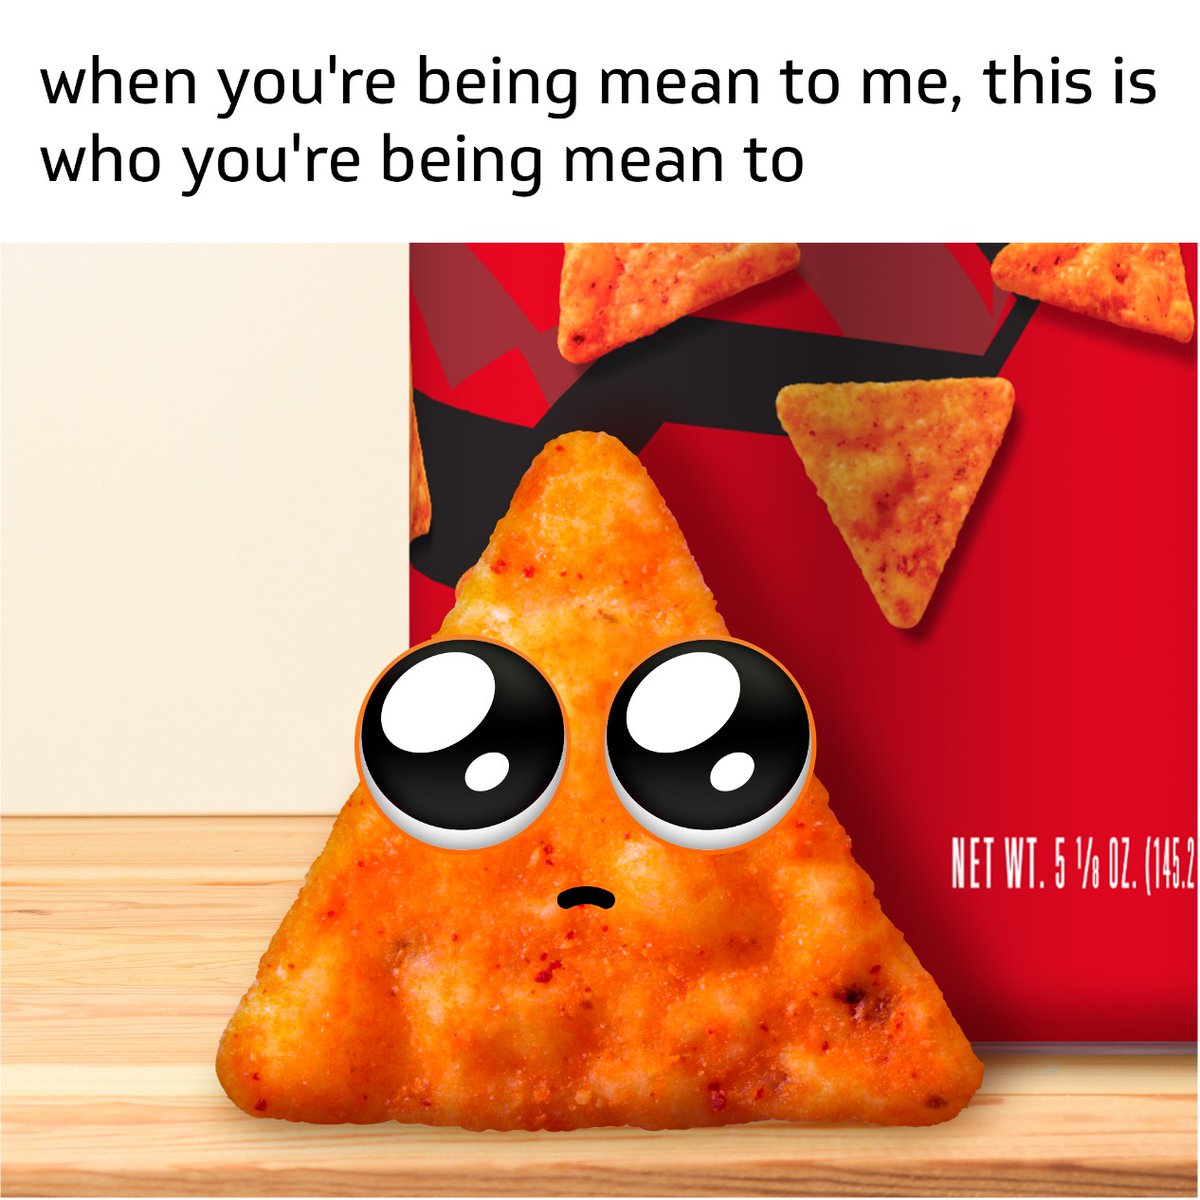 'I'm just a baby' - me the Doritos mini